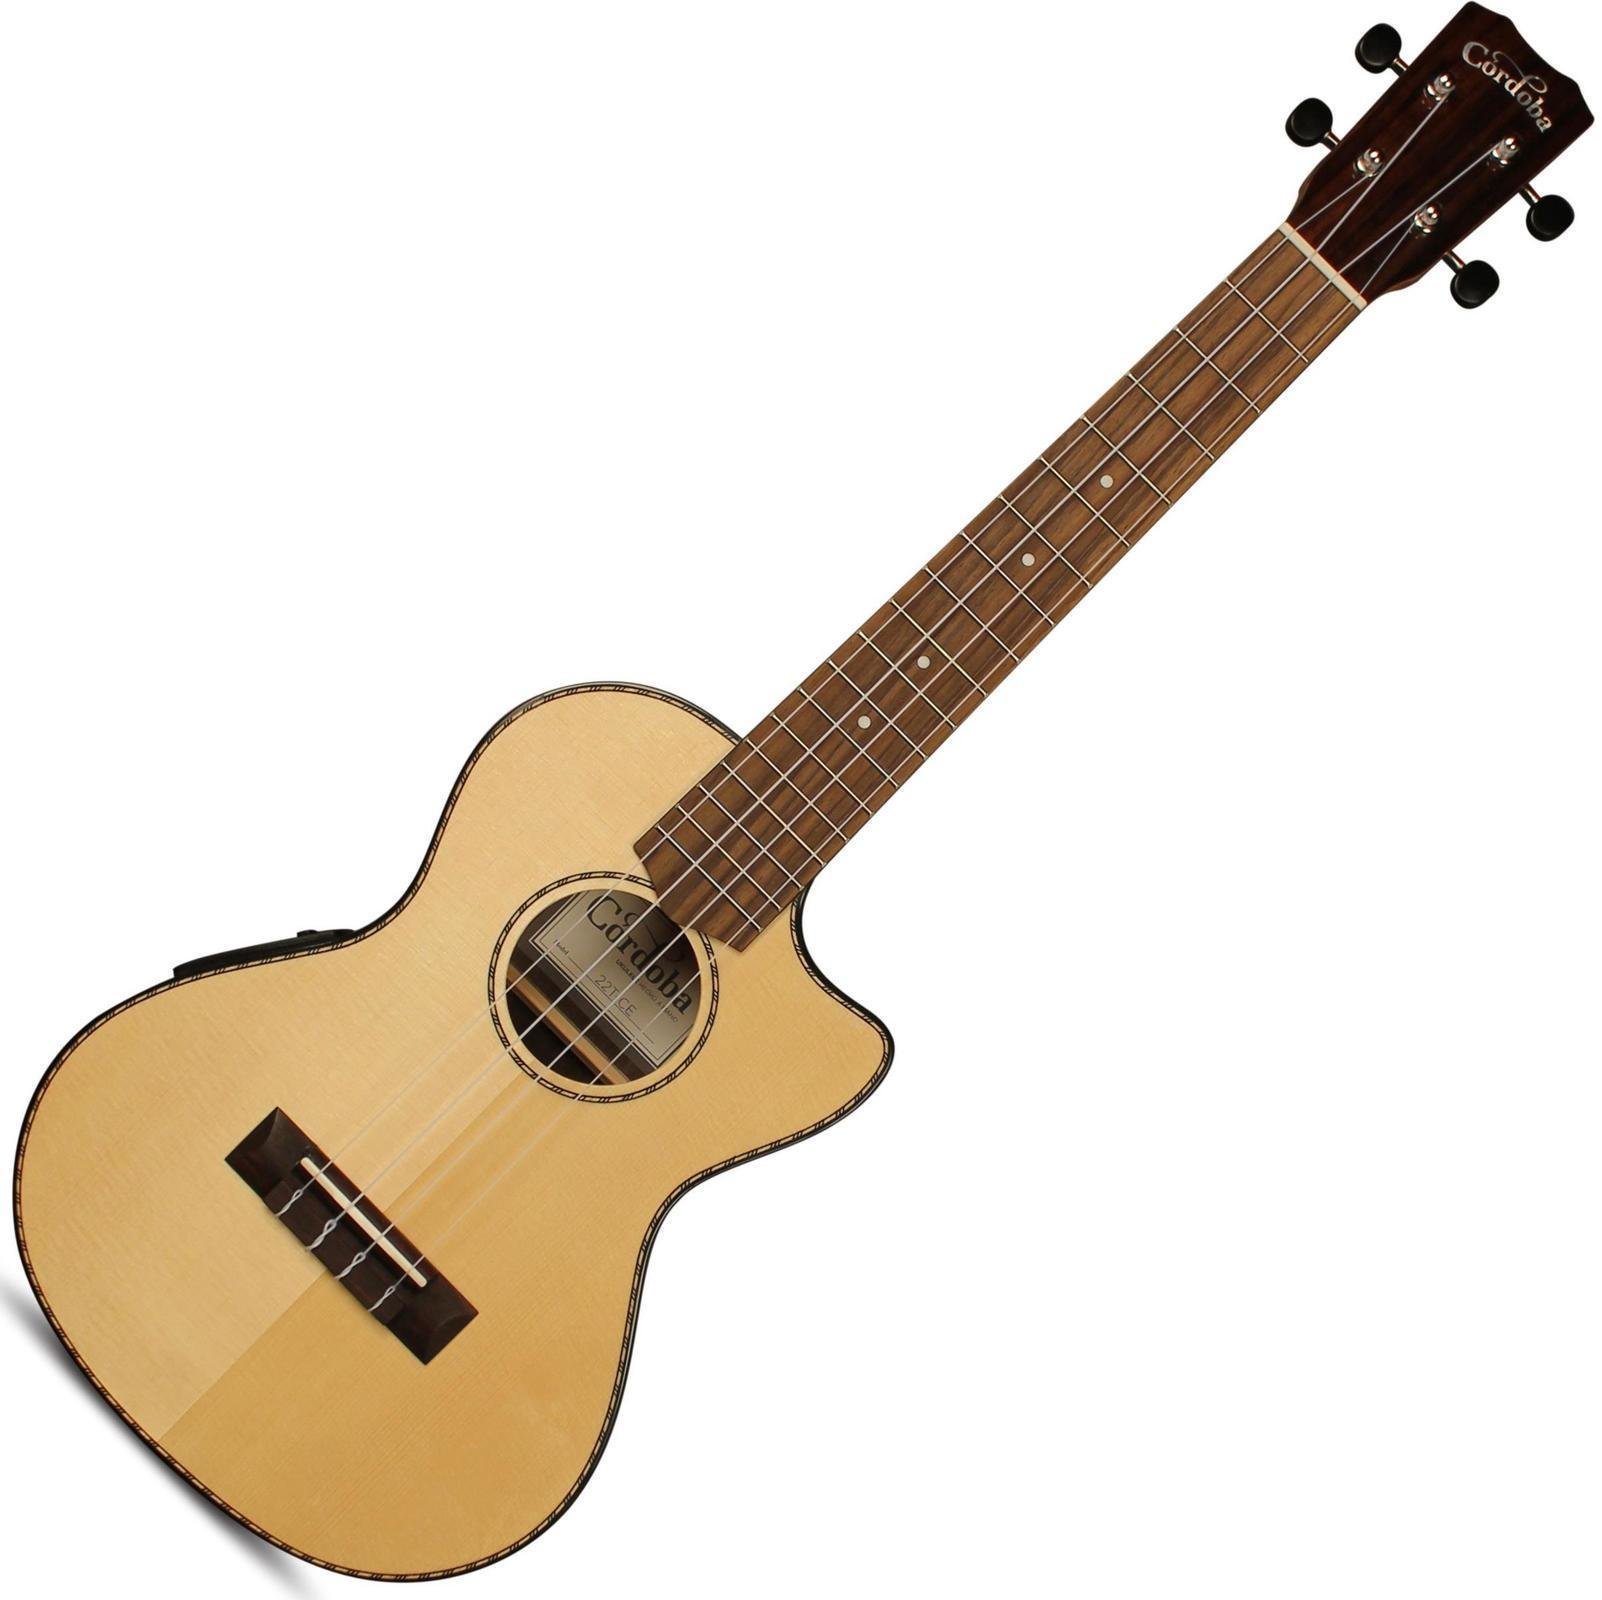 Tenor ukulele Cordoba 22T-CE Tenor Size Electric Ukulele